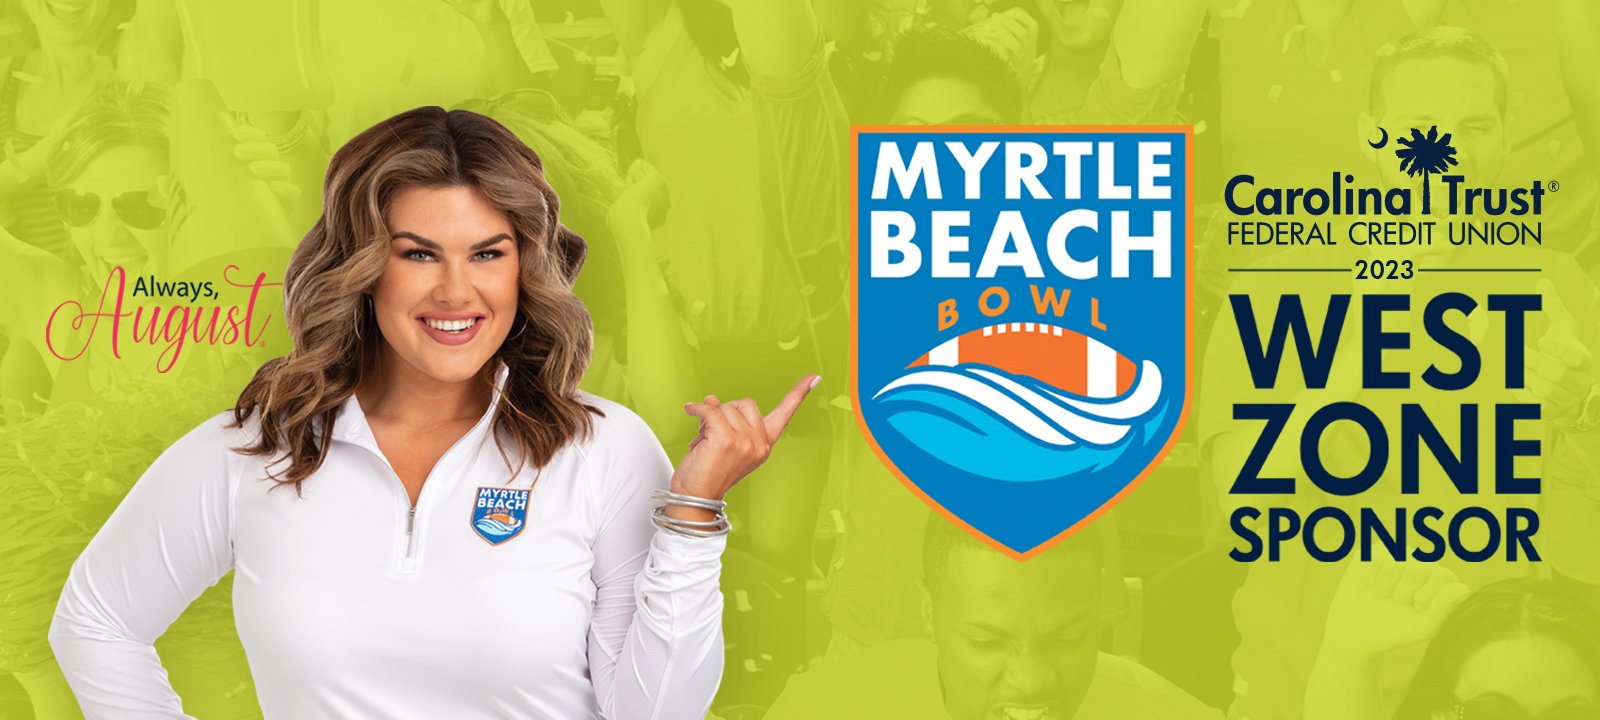 Myrtle-Beach-Bowl-Main-Banner-1600x720-1